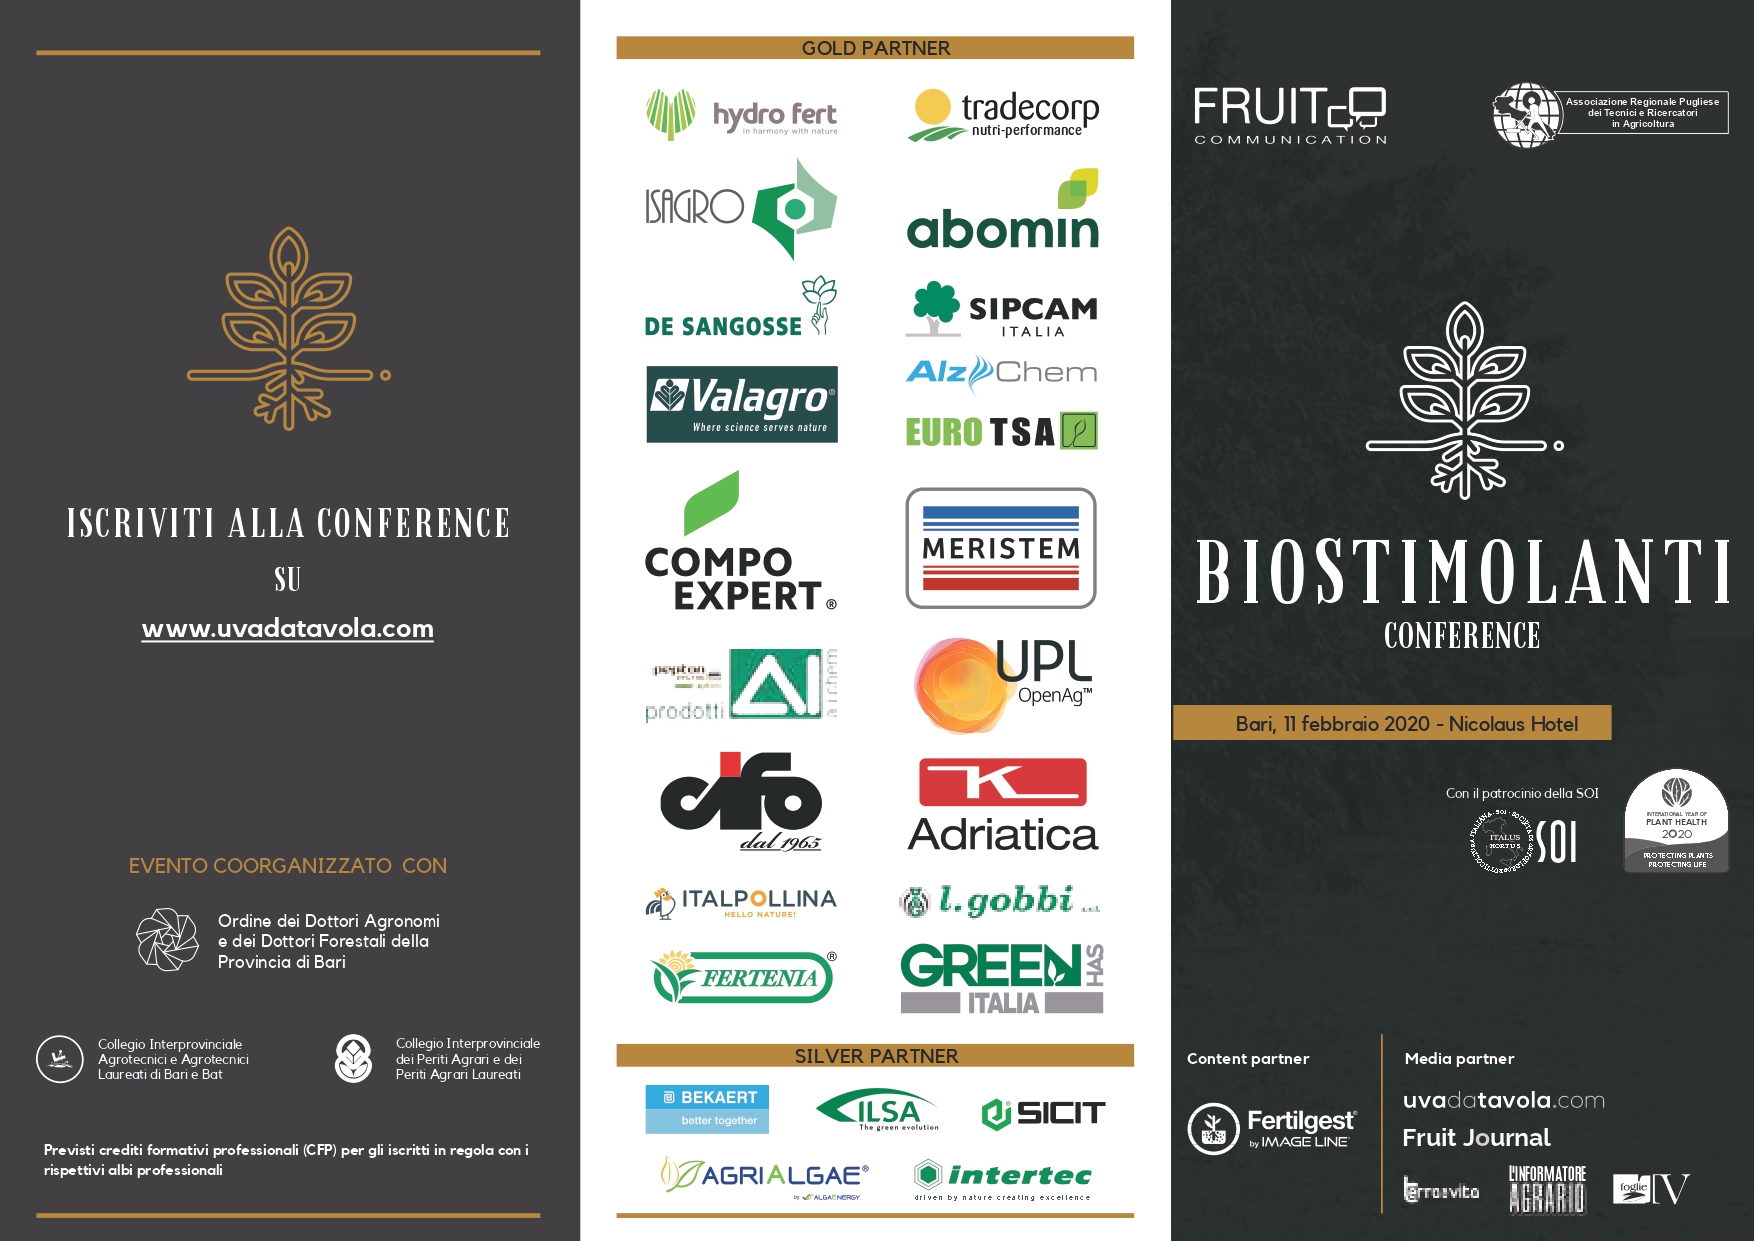 biostimolanti-conference-bari-nicolaus-hotel-11-feb-2020-fronte